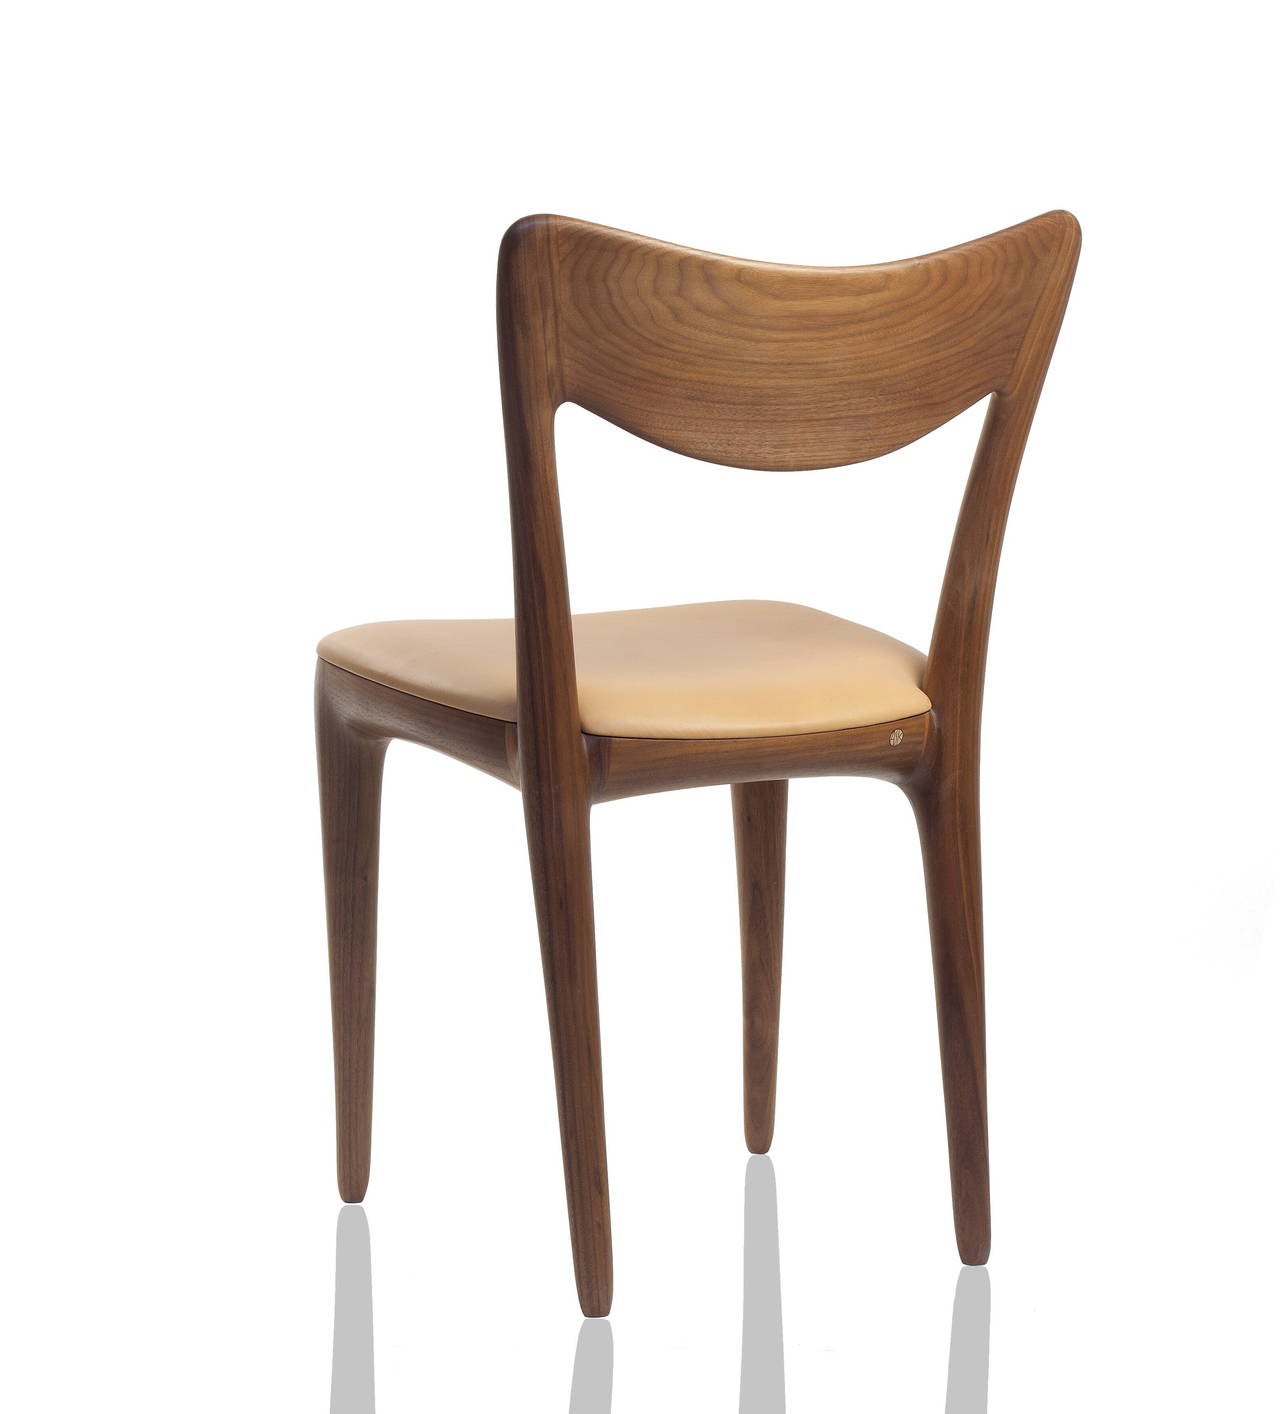 Kora-Esszimmerstühle, persönlich entworfen und handgefertigt von Ask Emil Skovgaard, Dänemark. Limitierte Ausgabe.
Abmessungen: Sitzhöhe 45 cm, (17,7